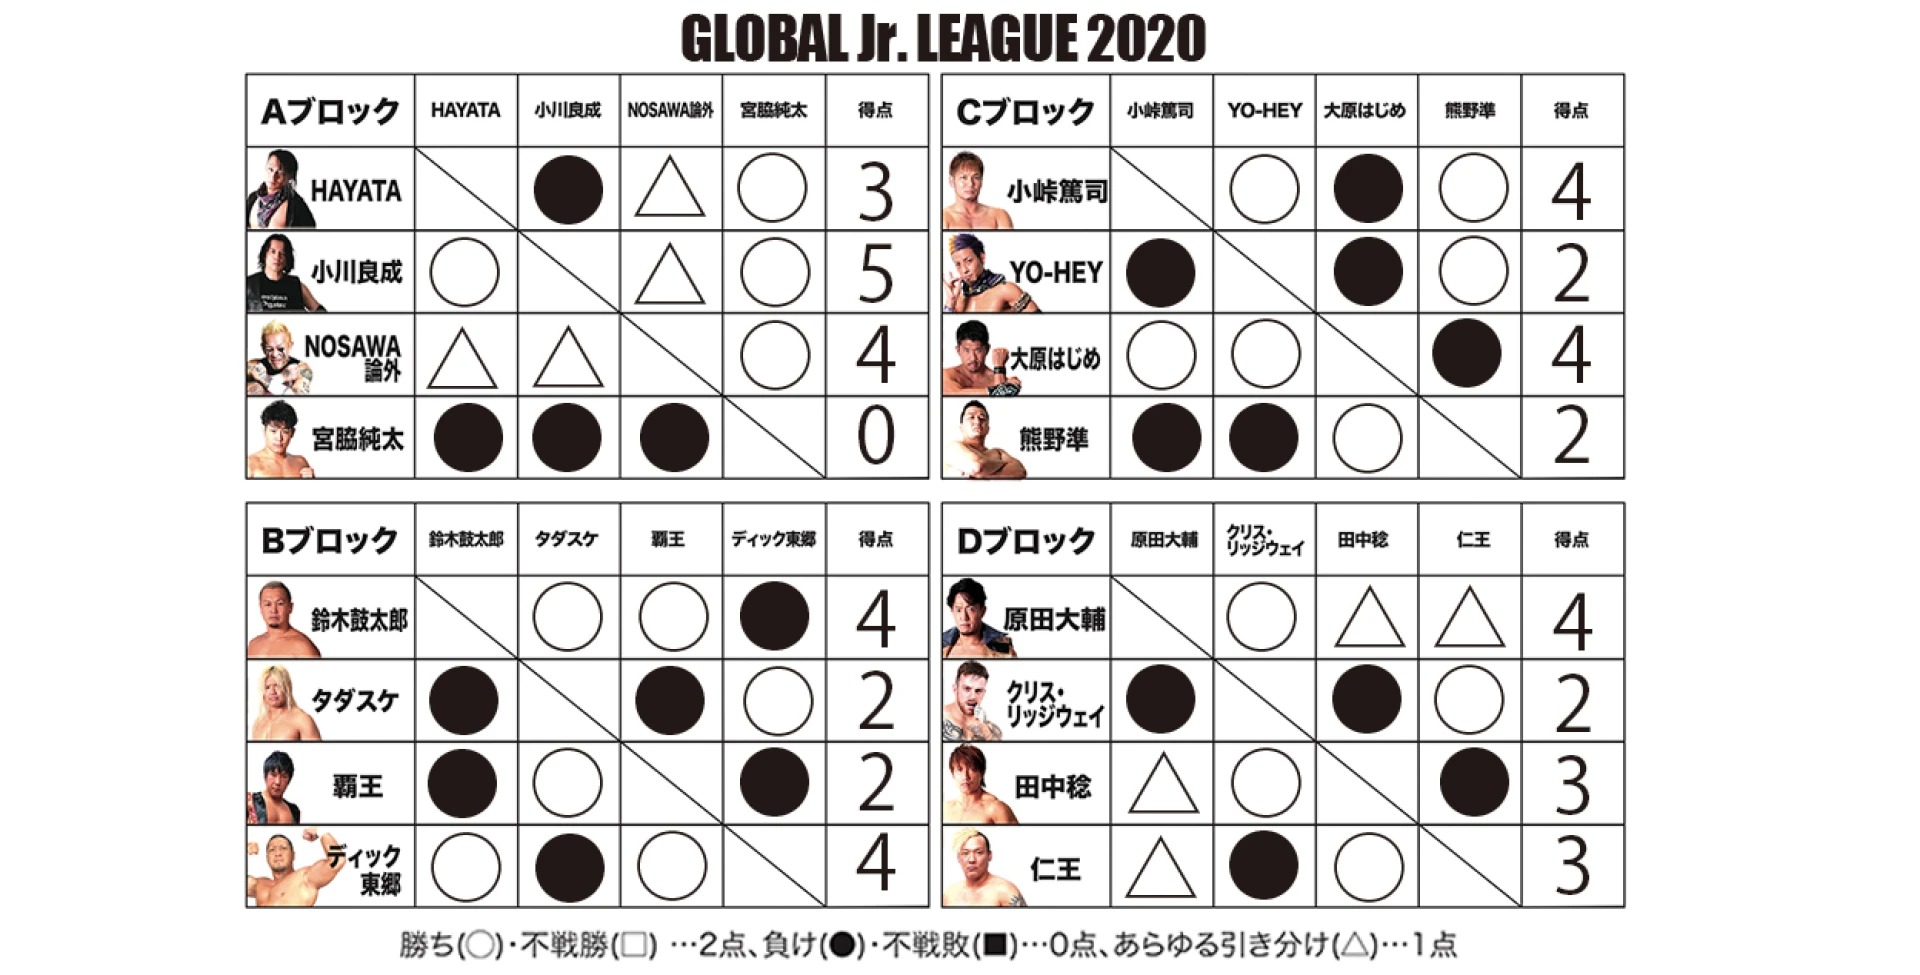 【1･25大阪大会終了時点】GLOBAL Jr. LEAGUE 2020 得点表